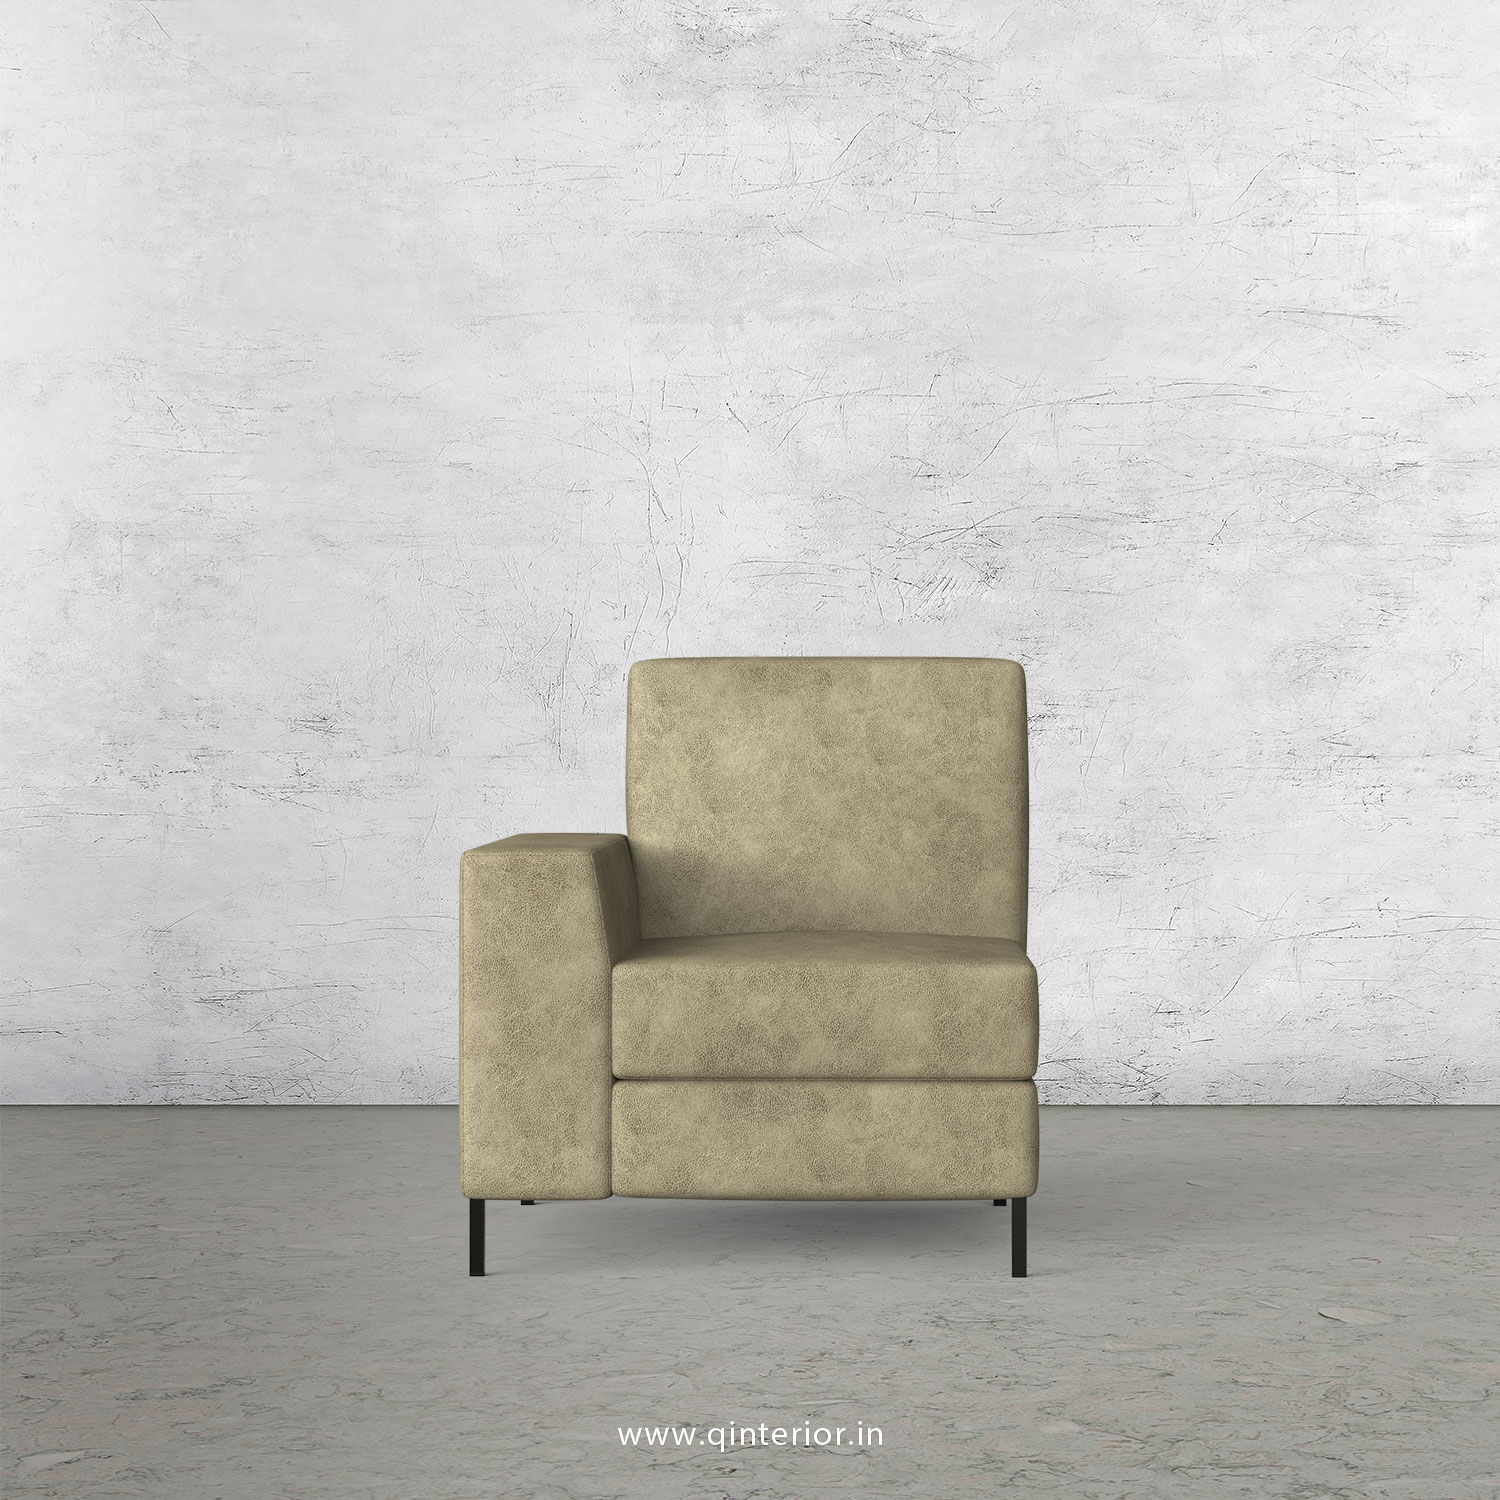 Viva 1 Seater Modular Sofa in Fab Leather Fabric - MSFA001 FL03